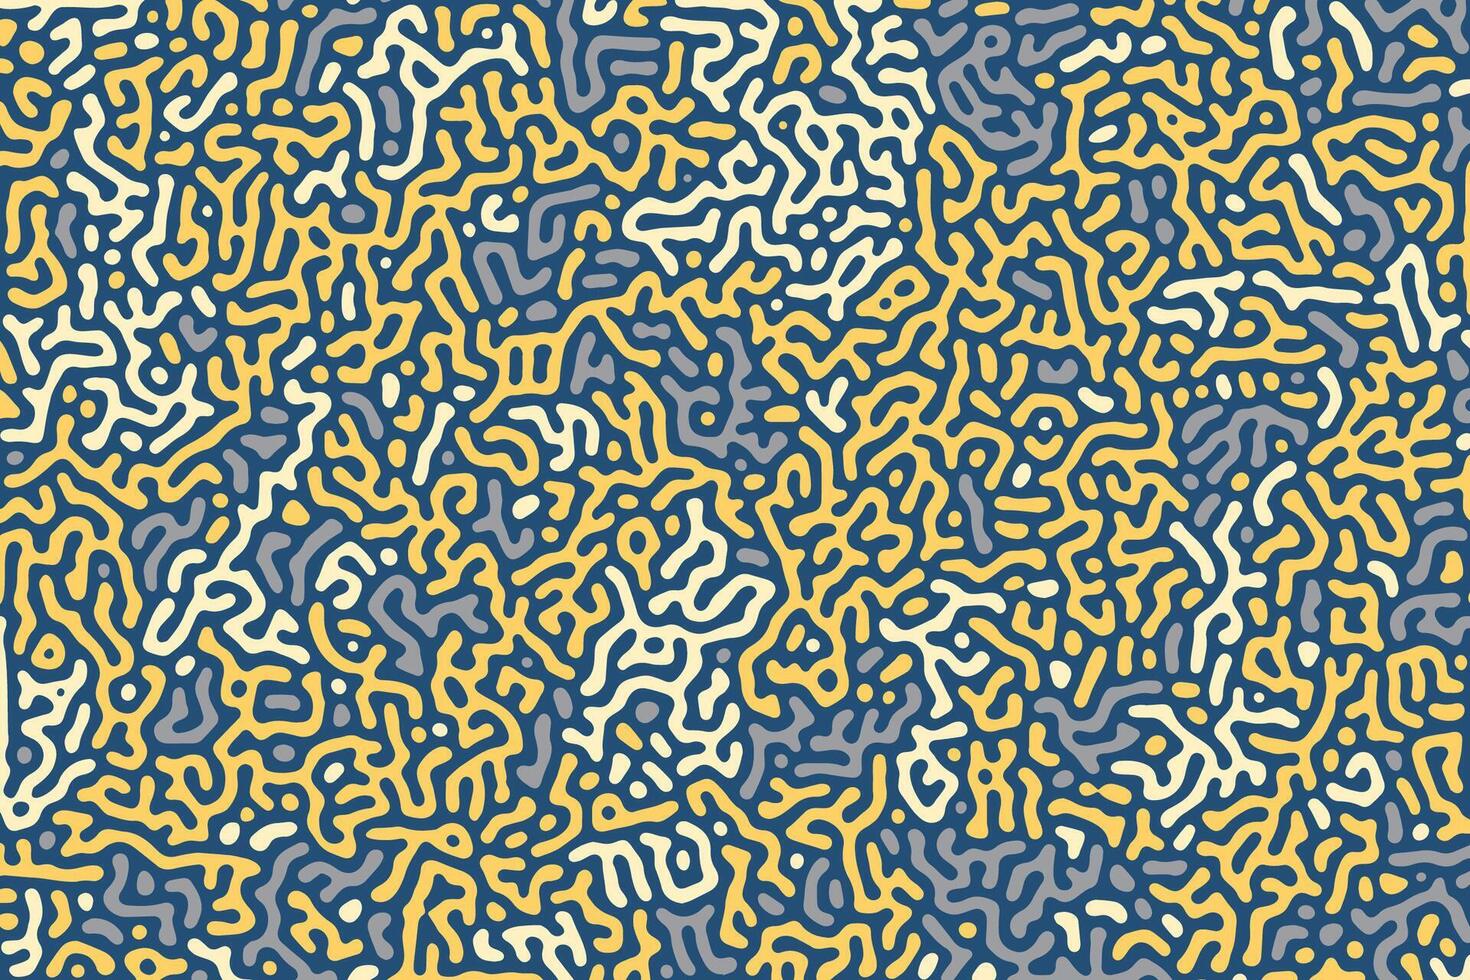 een levendig vector backdrop met een abstract, biologisch doolhof patroon, met vetgedrukt, golvend lijnen en een retro, kleurrijk ontwerp dat vormen een naadloos en meetkundig labyrint